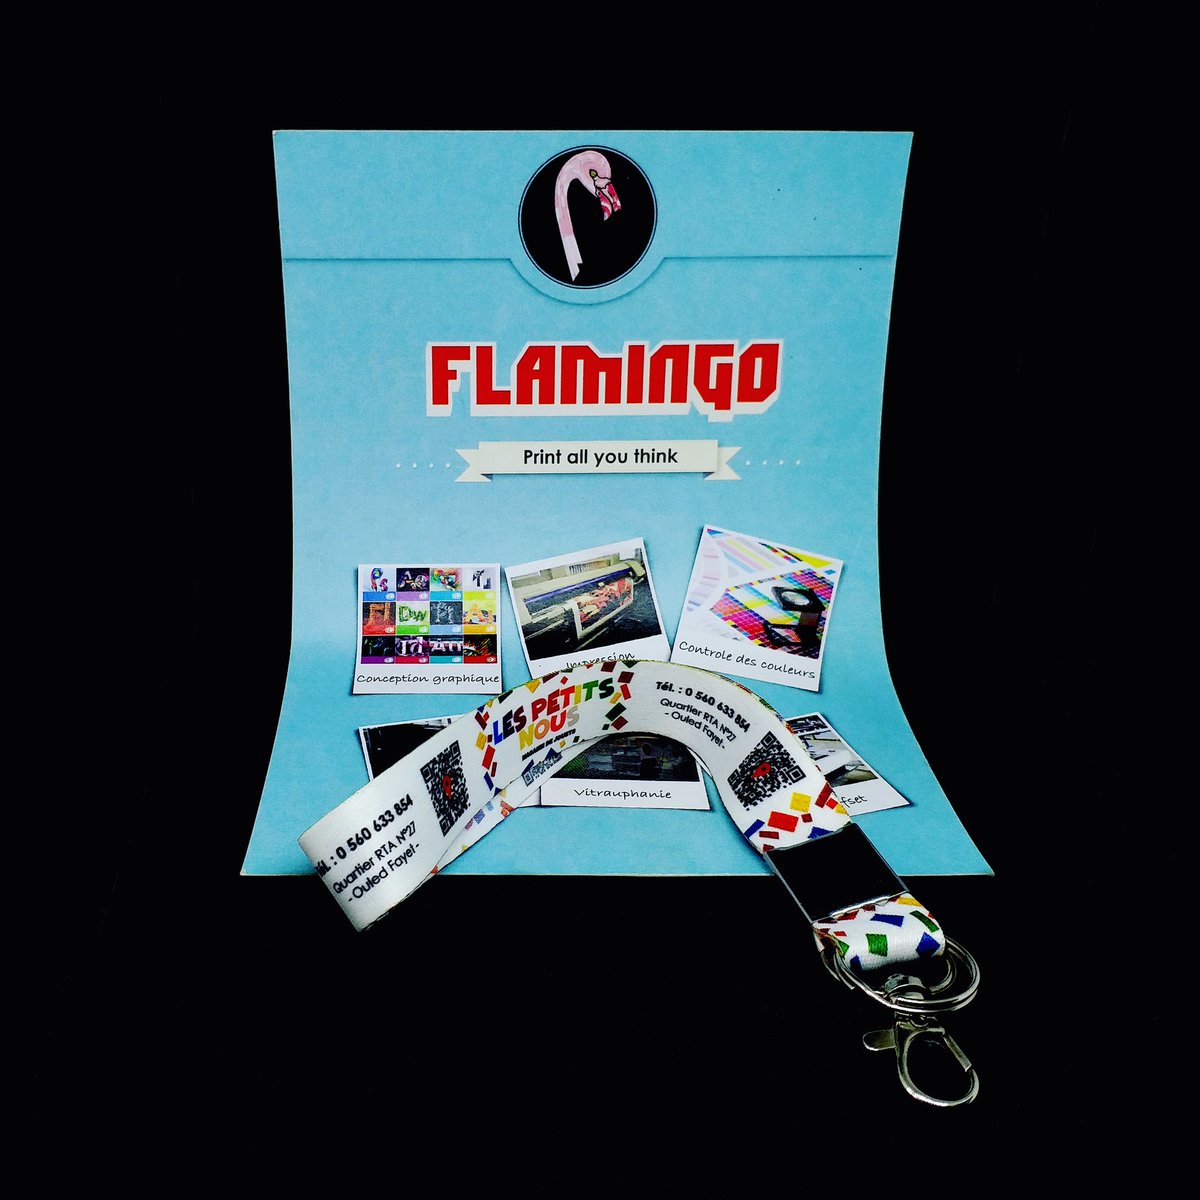 Porte clés en lanière idéal pour vôtre communication, cadeau d'entreprise et fin d'année.

#flamingocomdz #lespetitsnous #portecle  #cadeauentreprise #cadeaufindannee #madeinalgeria #algeria #kouba #imprimeuralgerie #القبة#صنع_جزائري